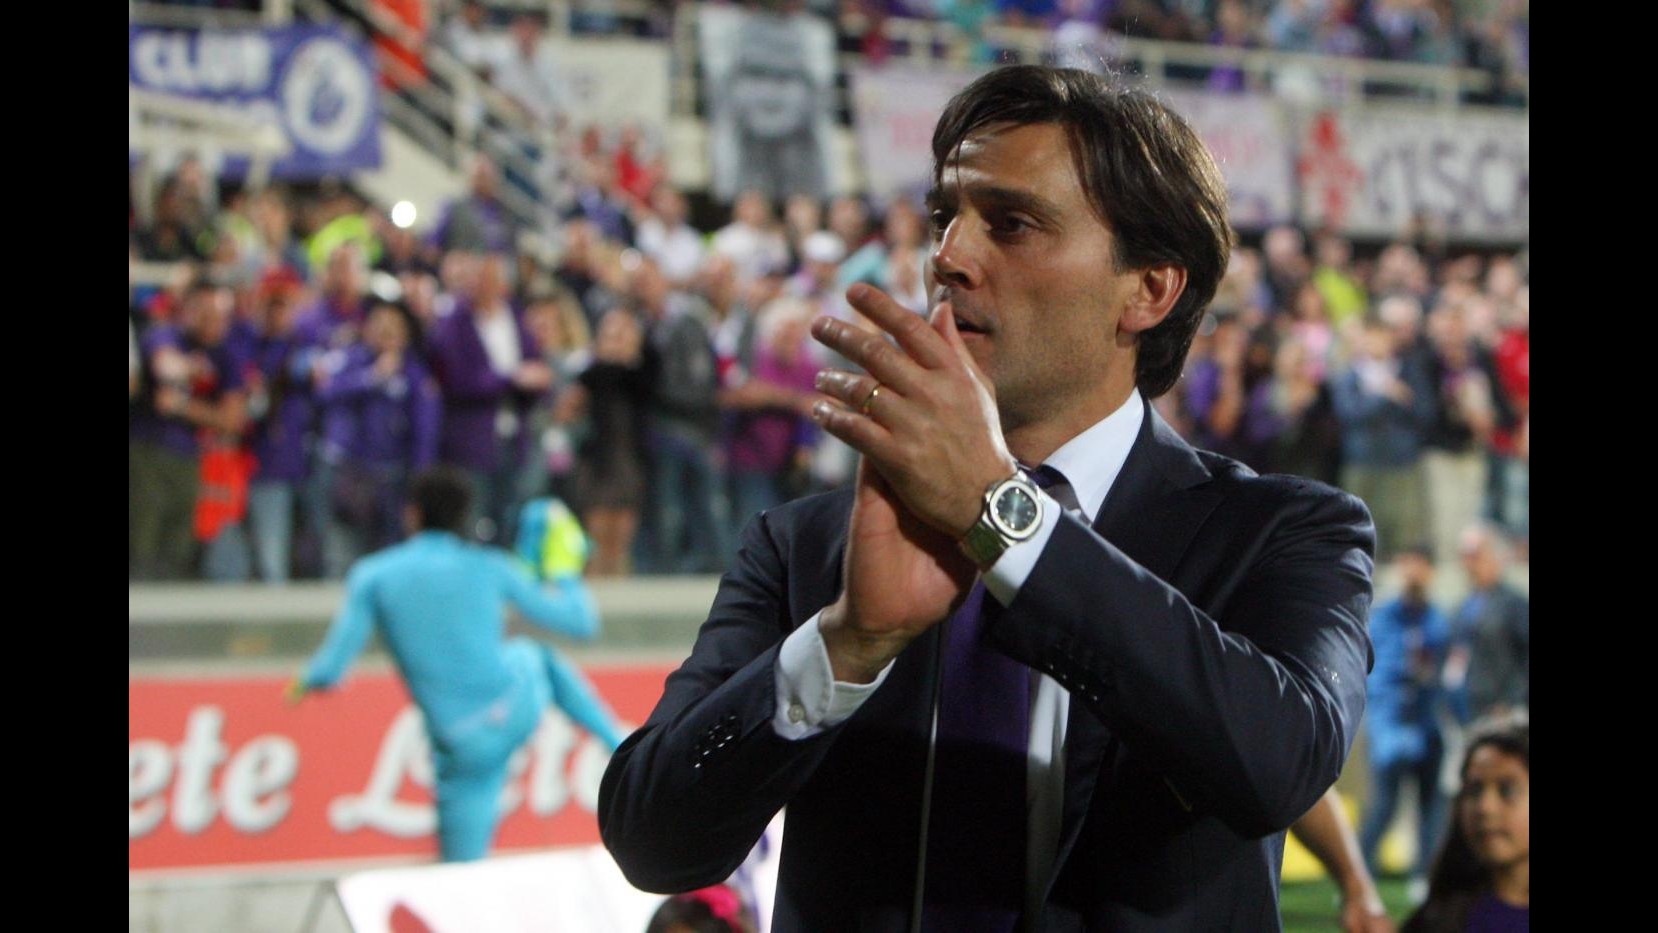 Fiorentina-Montella, è finita. Club esonera tecnico: Venuta meno la fiducia